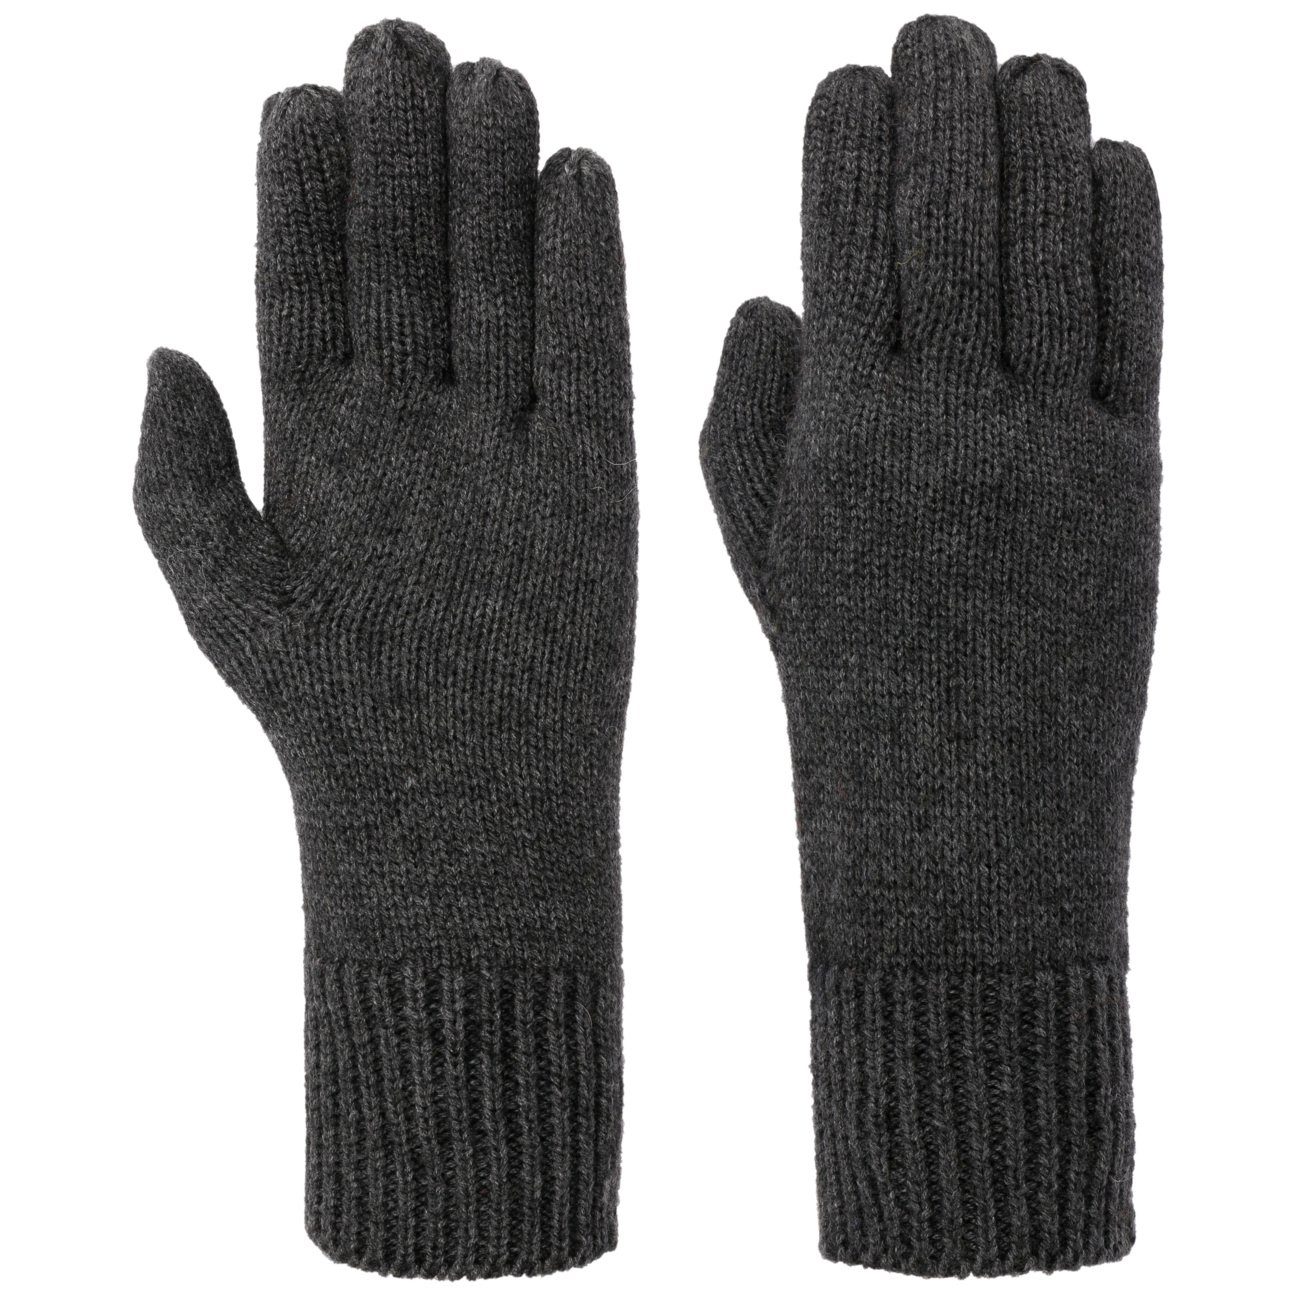 Handschuhe anthrazit Seeberger Strickhandschuhe